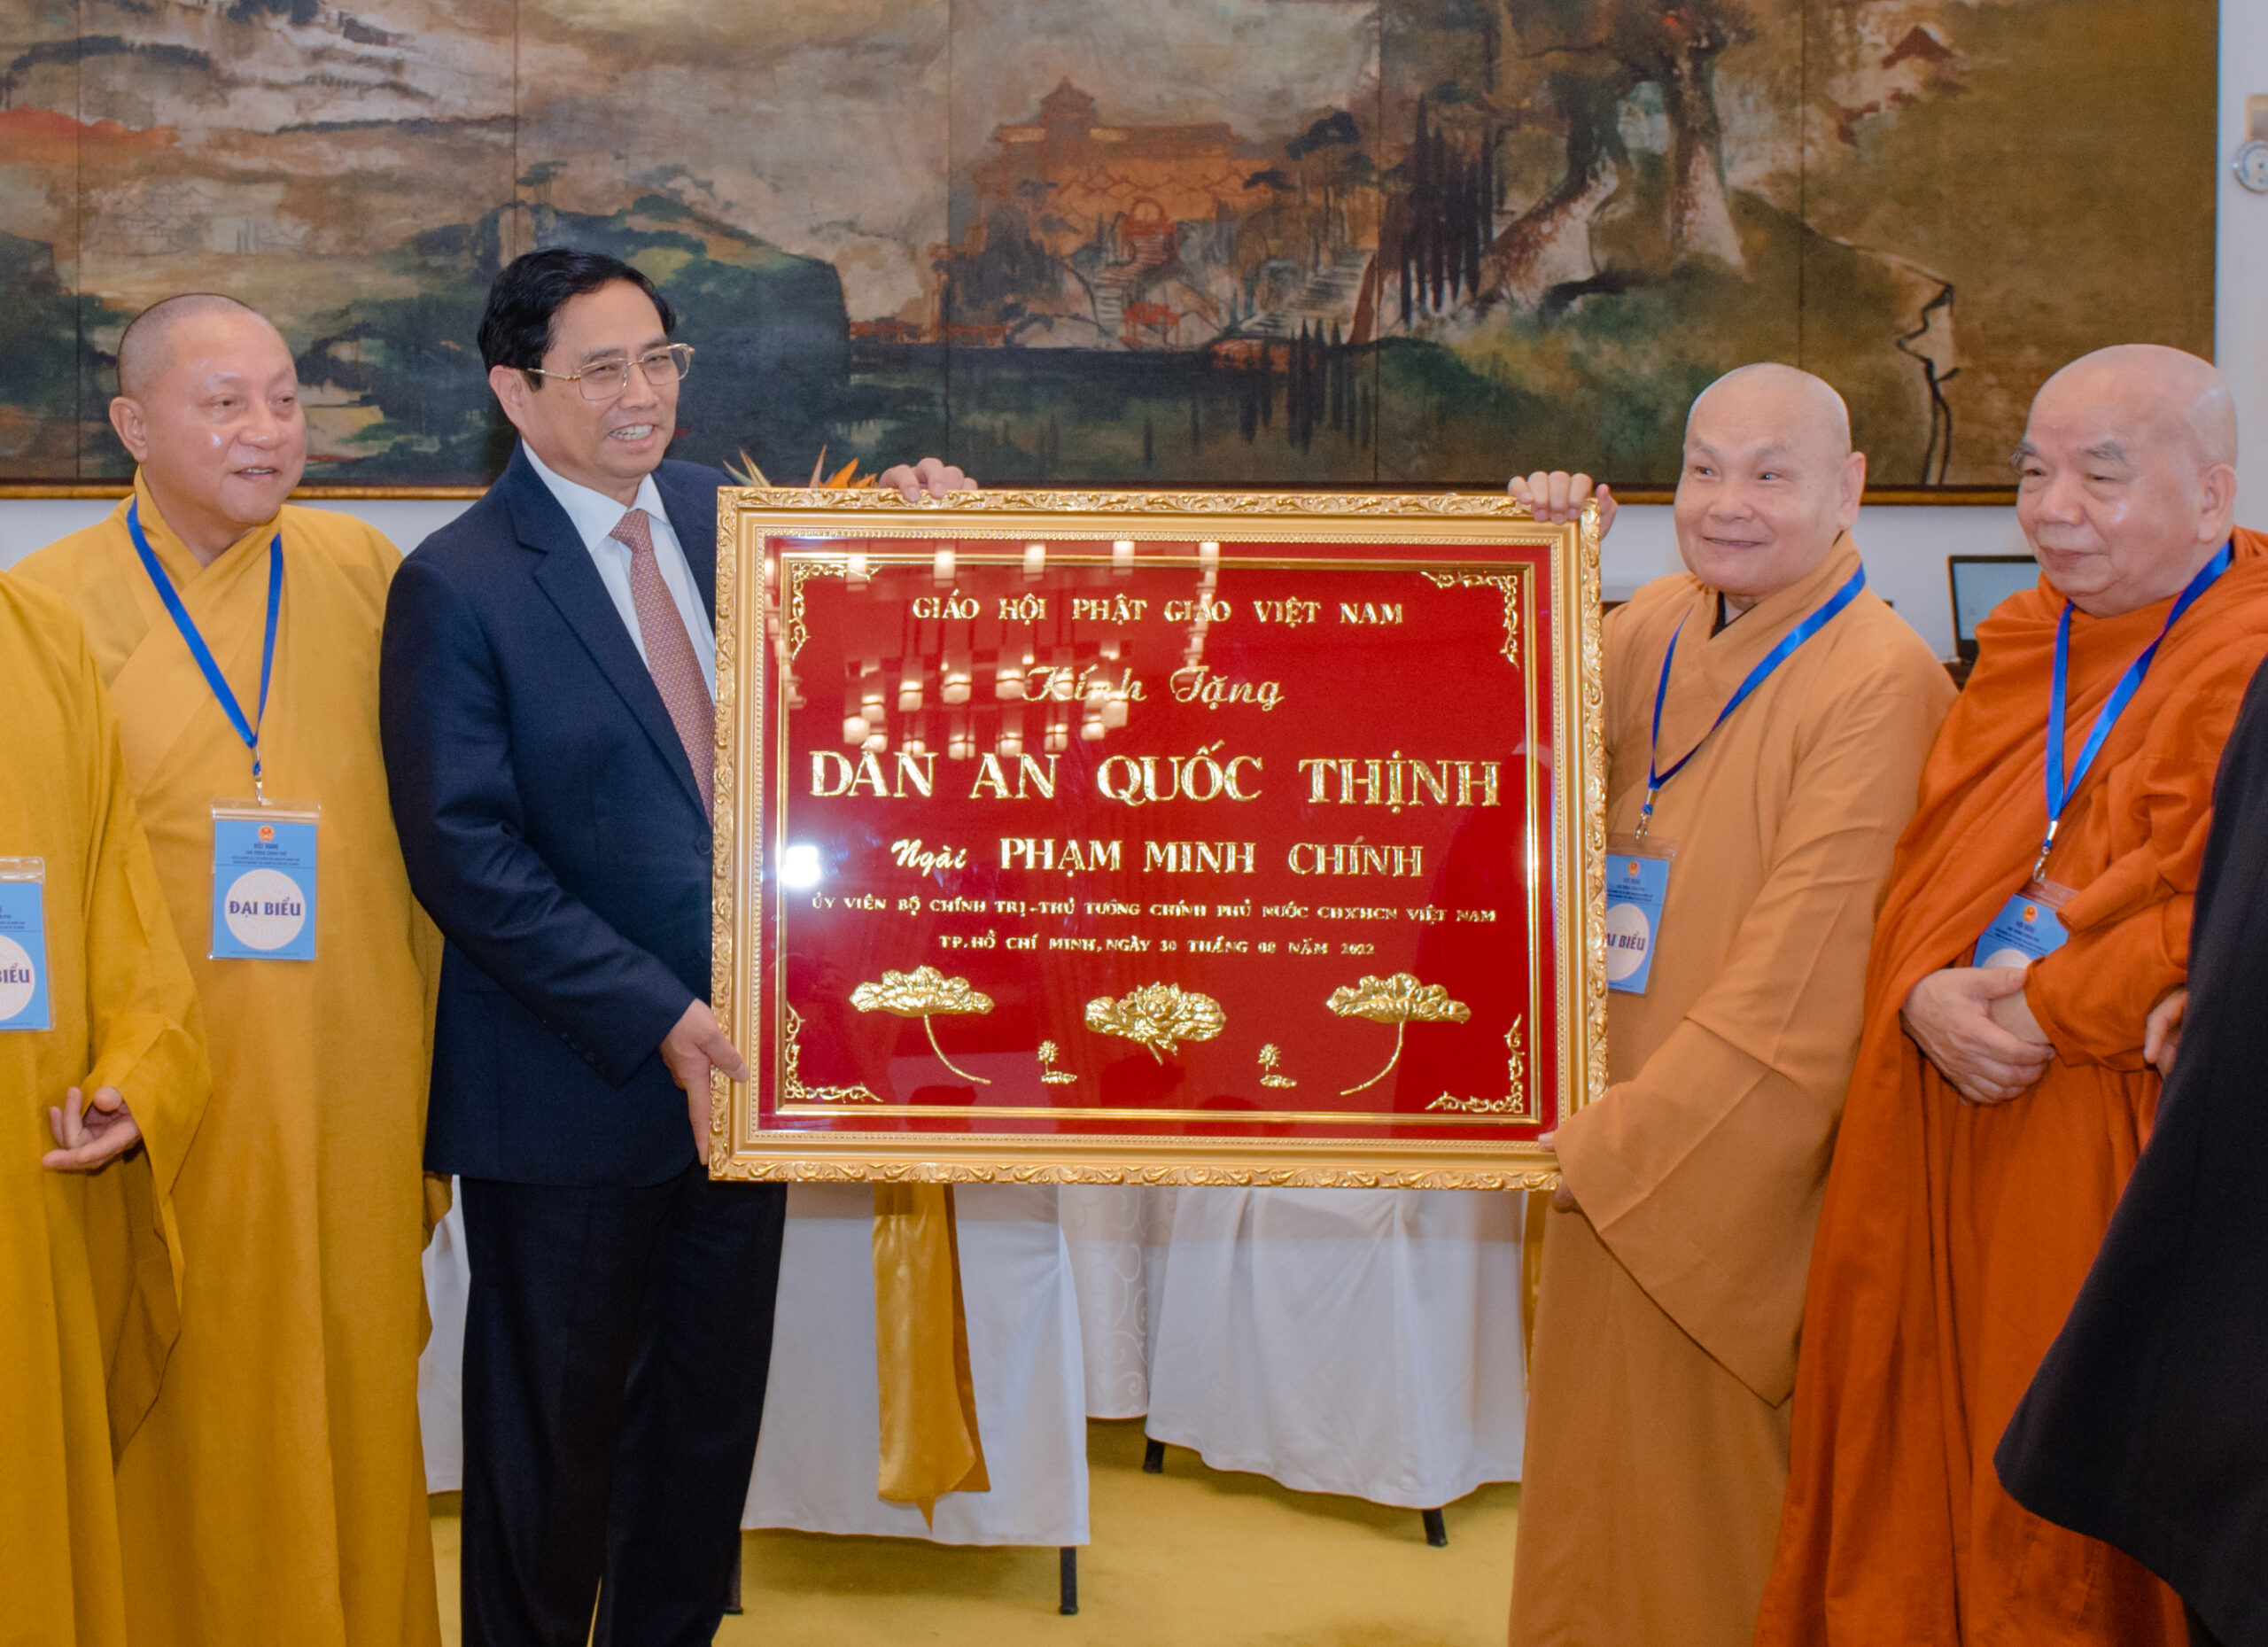 Giáo hội Phật giáo Việt Nam với đường hướng “Đạo Pháp – Dân Tộc – Chủ Nghĩa Xã Hội”